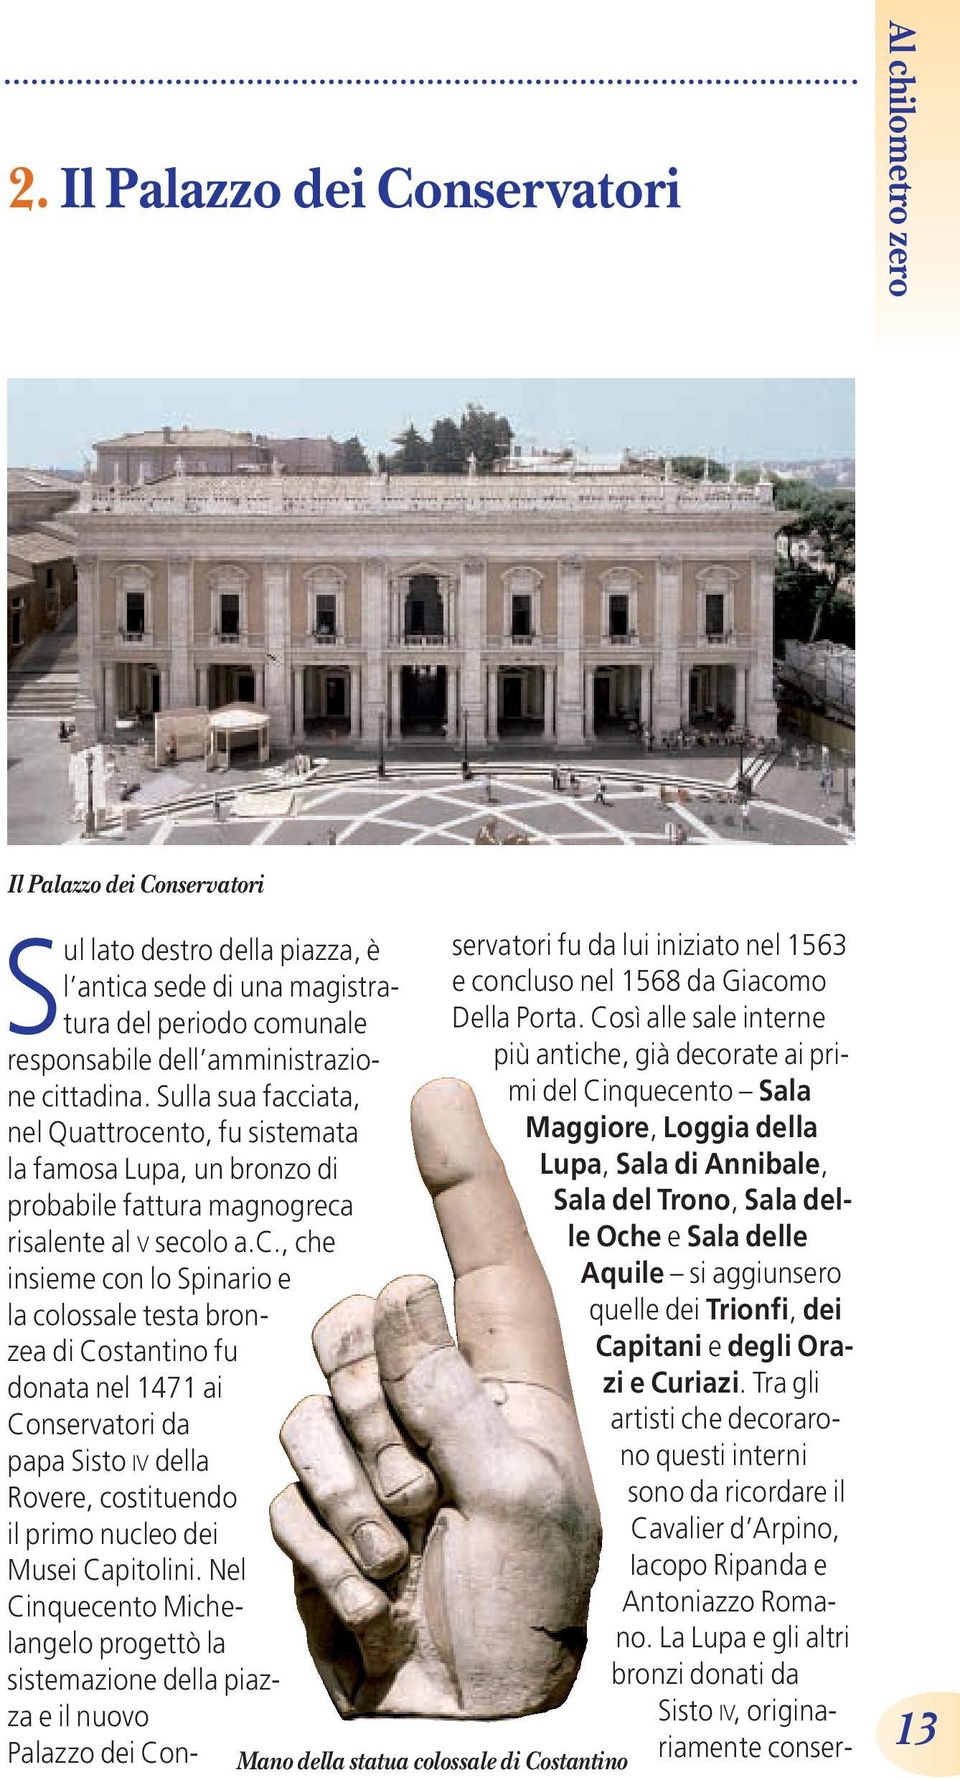 Nel Cinquecento Michelangelo progettò la sistemazione della piazza e il nuovo Palazzo dei Conservatori fu da lui iniziato nel 1563 e concluso nel 1568 da Giacomo Della Porta.